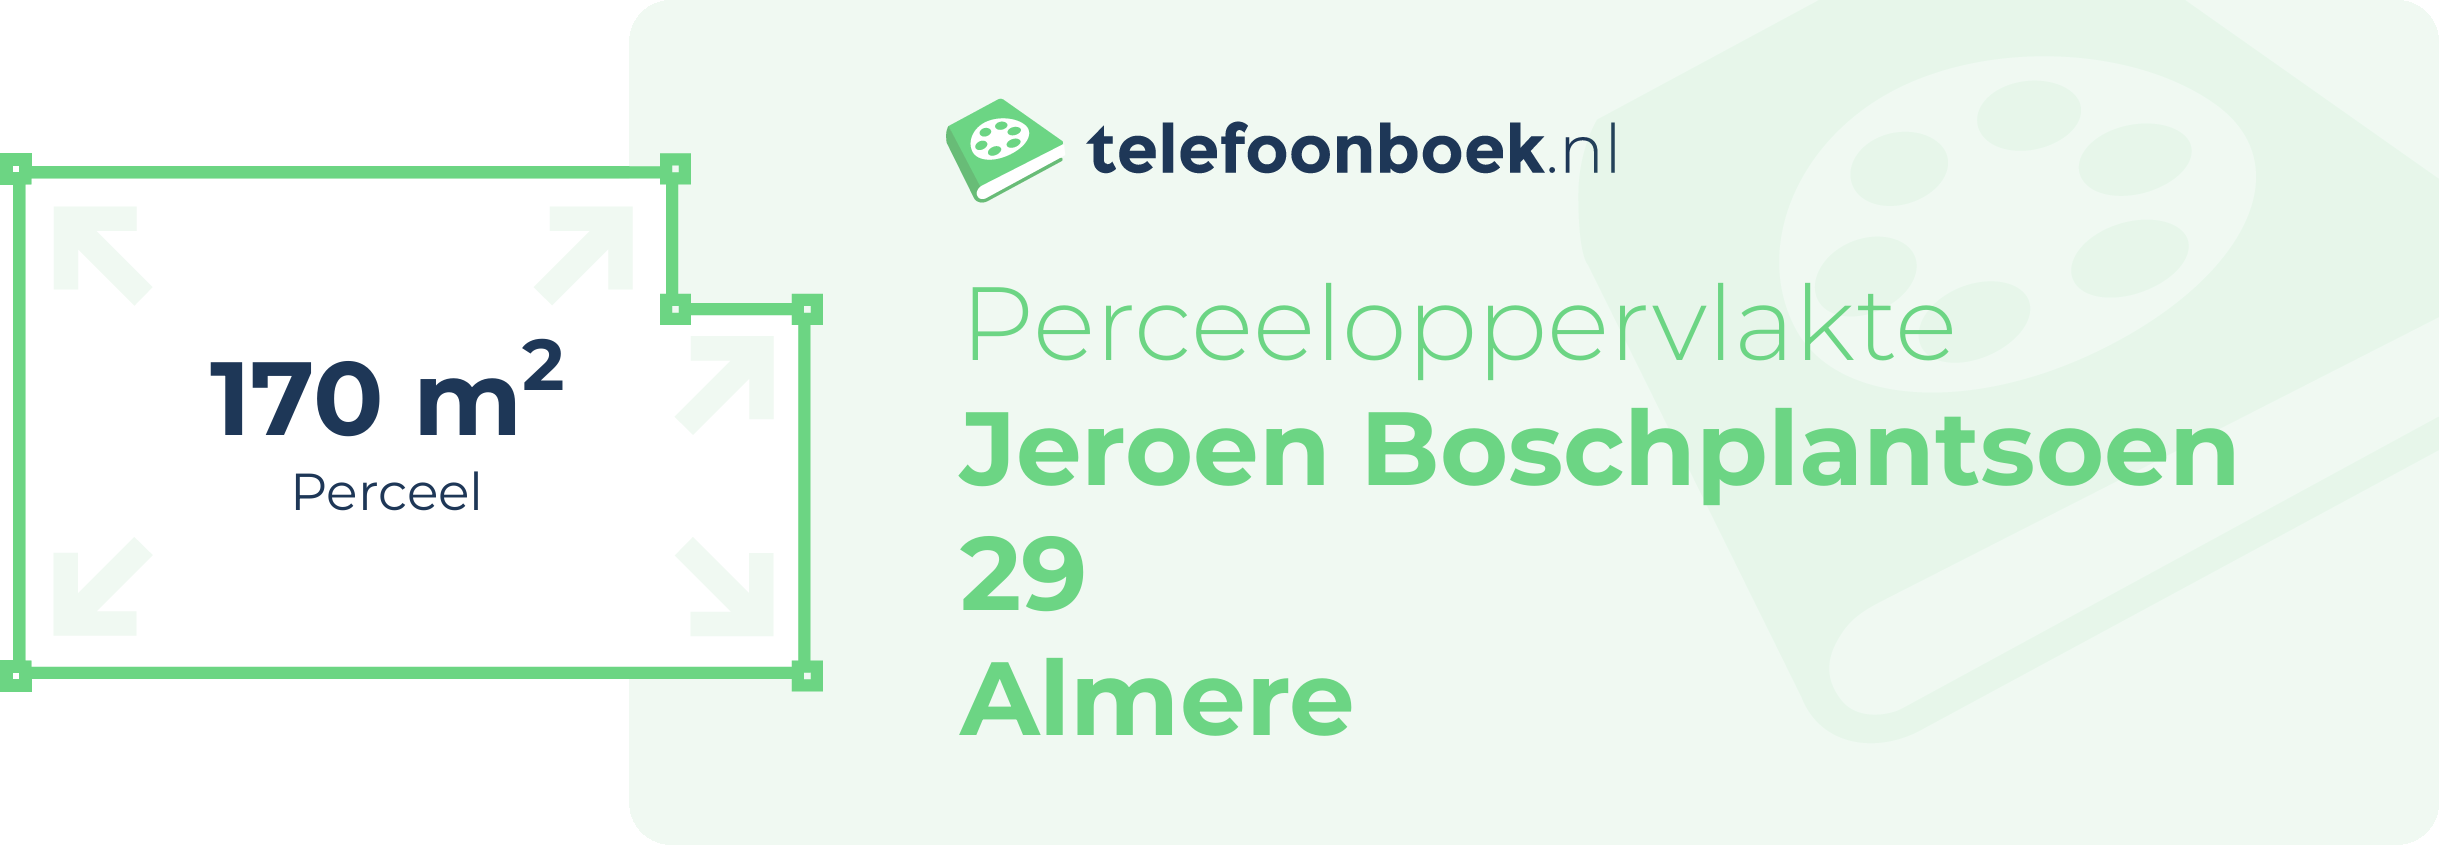 Perceeloppervlakte Jeroen Boschplantsoen 29 Almere